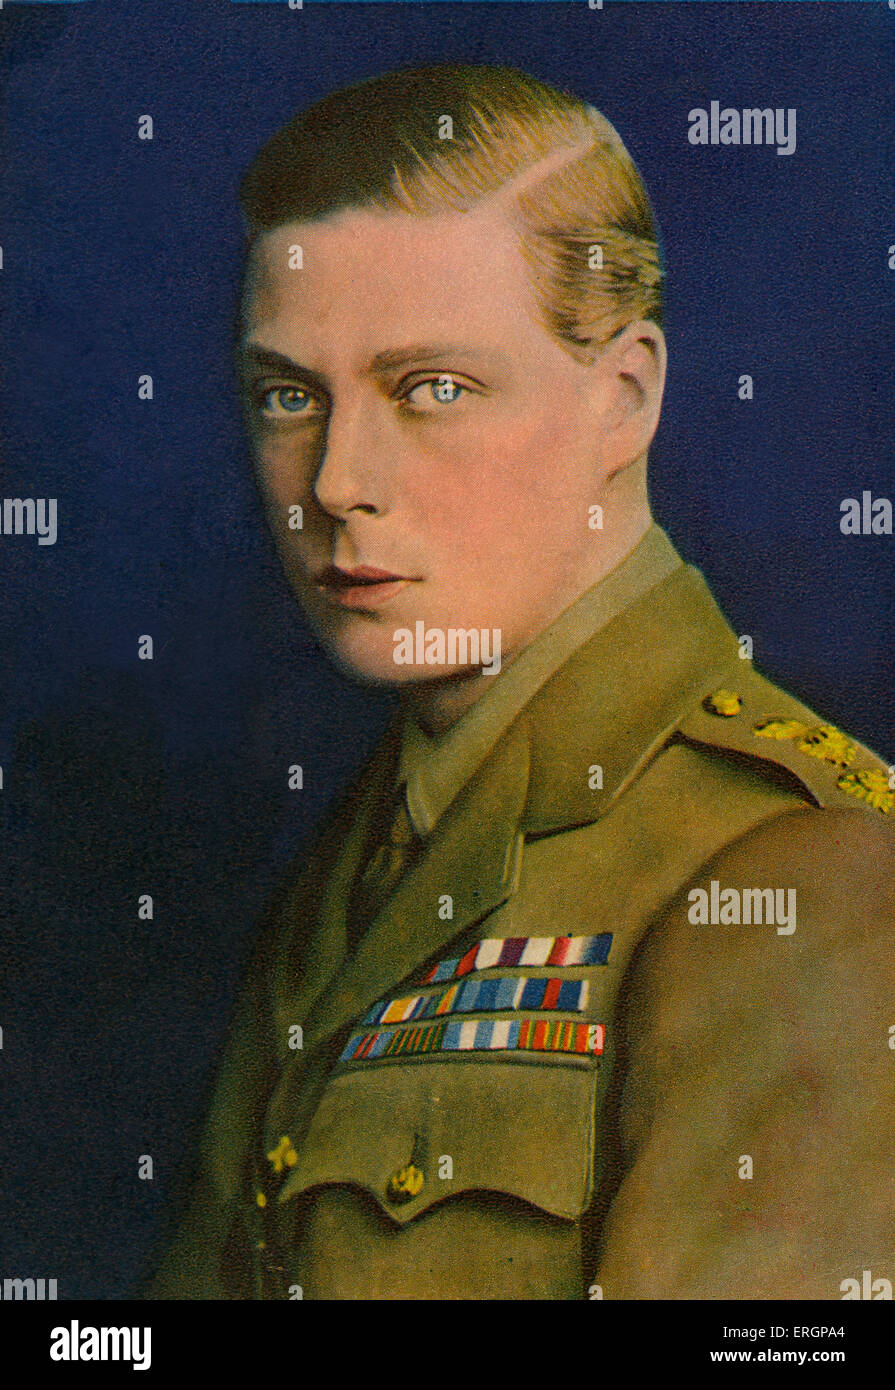 Édouard VIII - Prince de Galles, en uniforme militaire, portrait. Roi du Royaume-Uni et des Dominions britanniques du Banque D'Images